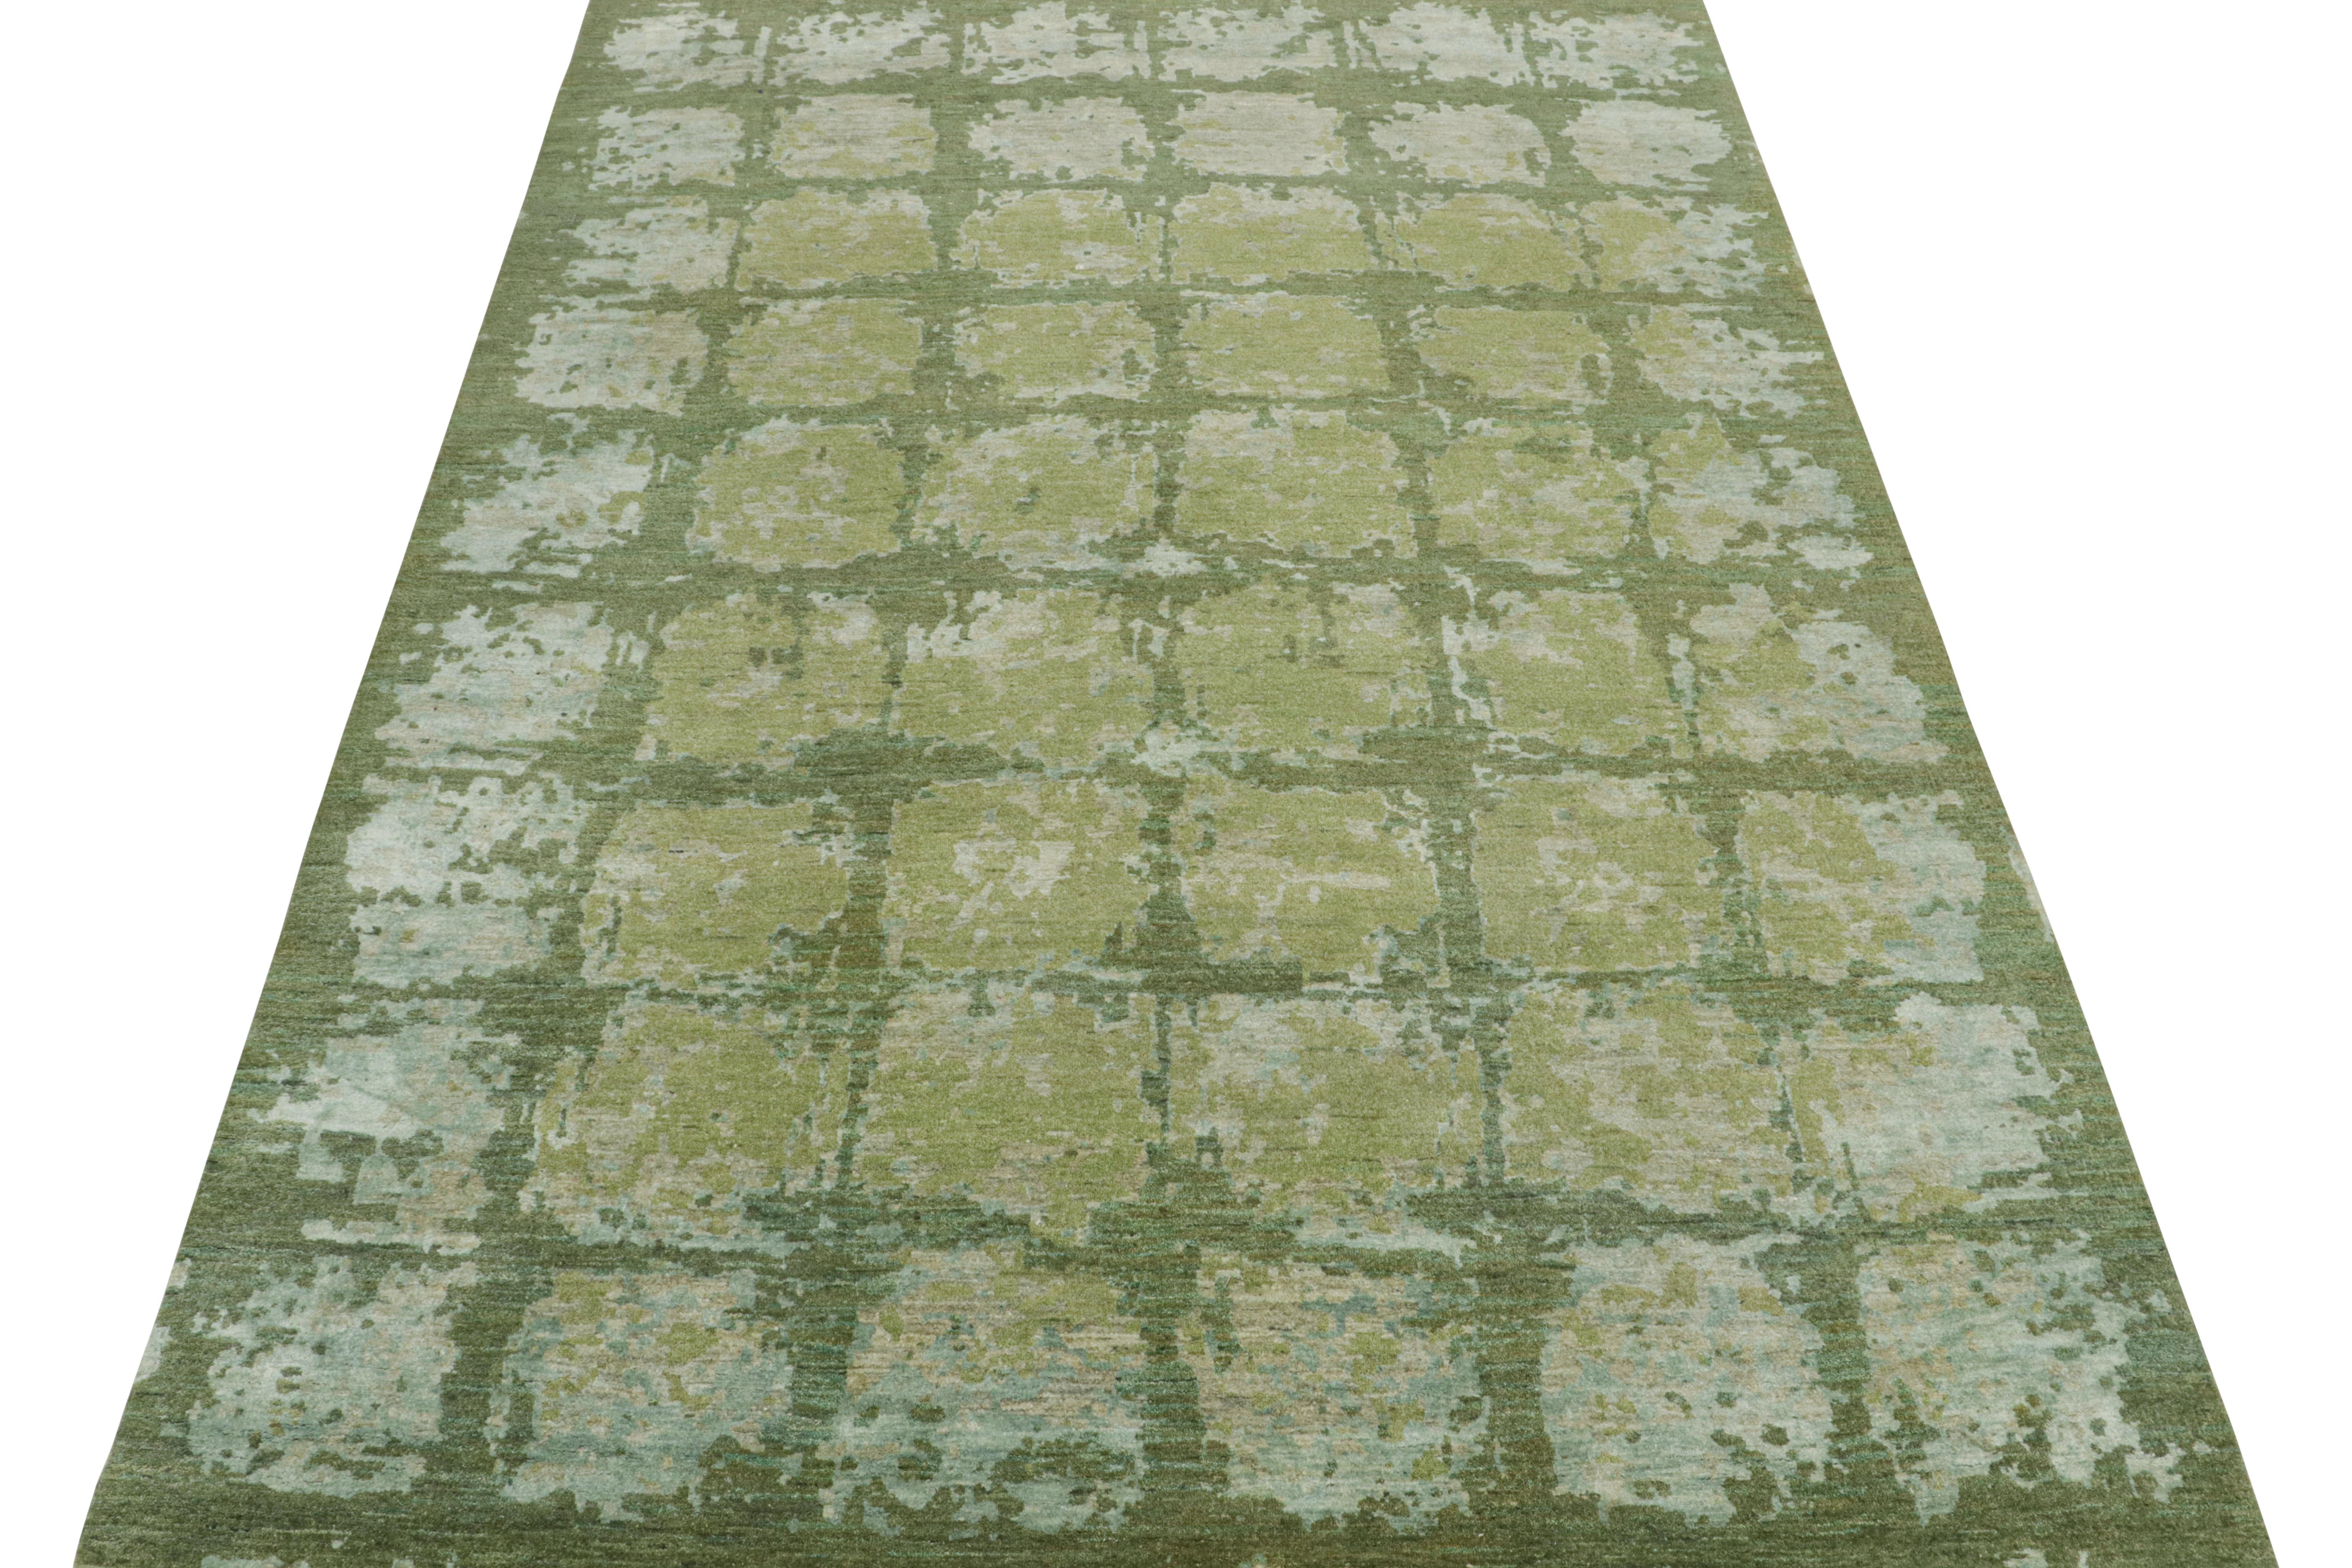 Ce tapis abstrait 10x14 est un nouvel ajout à la collection de tapis modernes de Rug & Kilim. Noué à la main en laine et en soie, son design joue sur des sensibilités picturales dans une mode audacieuse et une qualité complexe.

Plus loin dans le